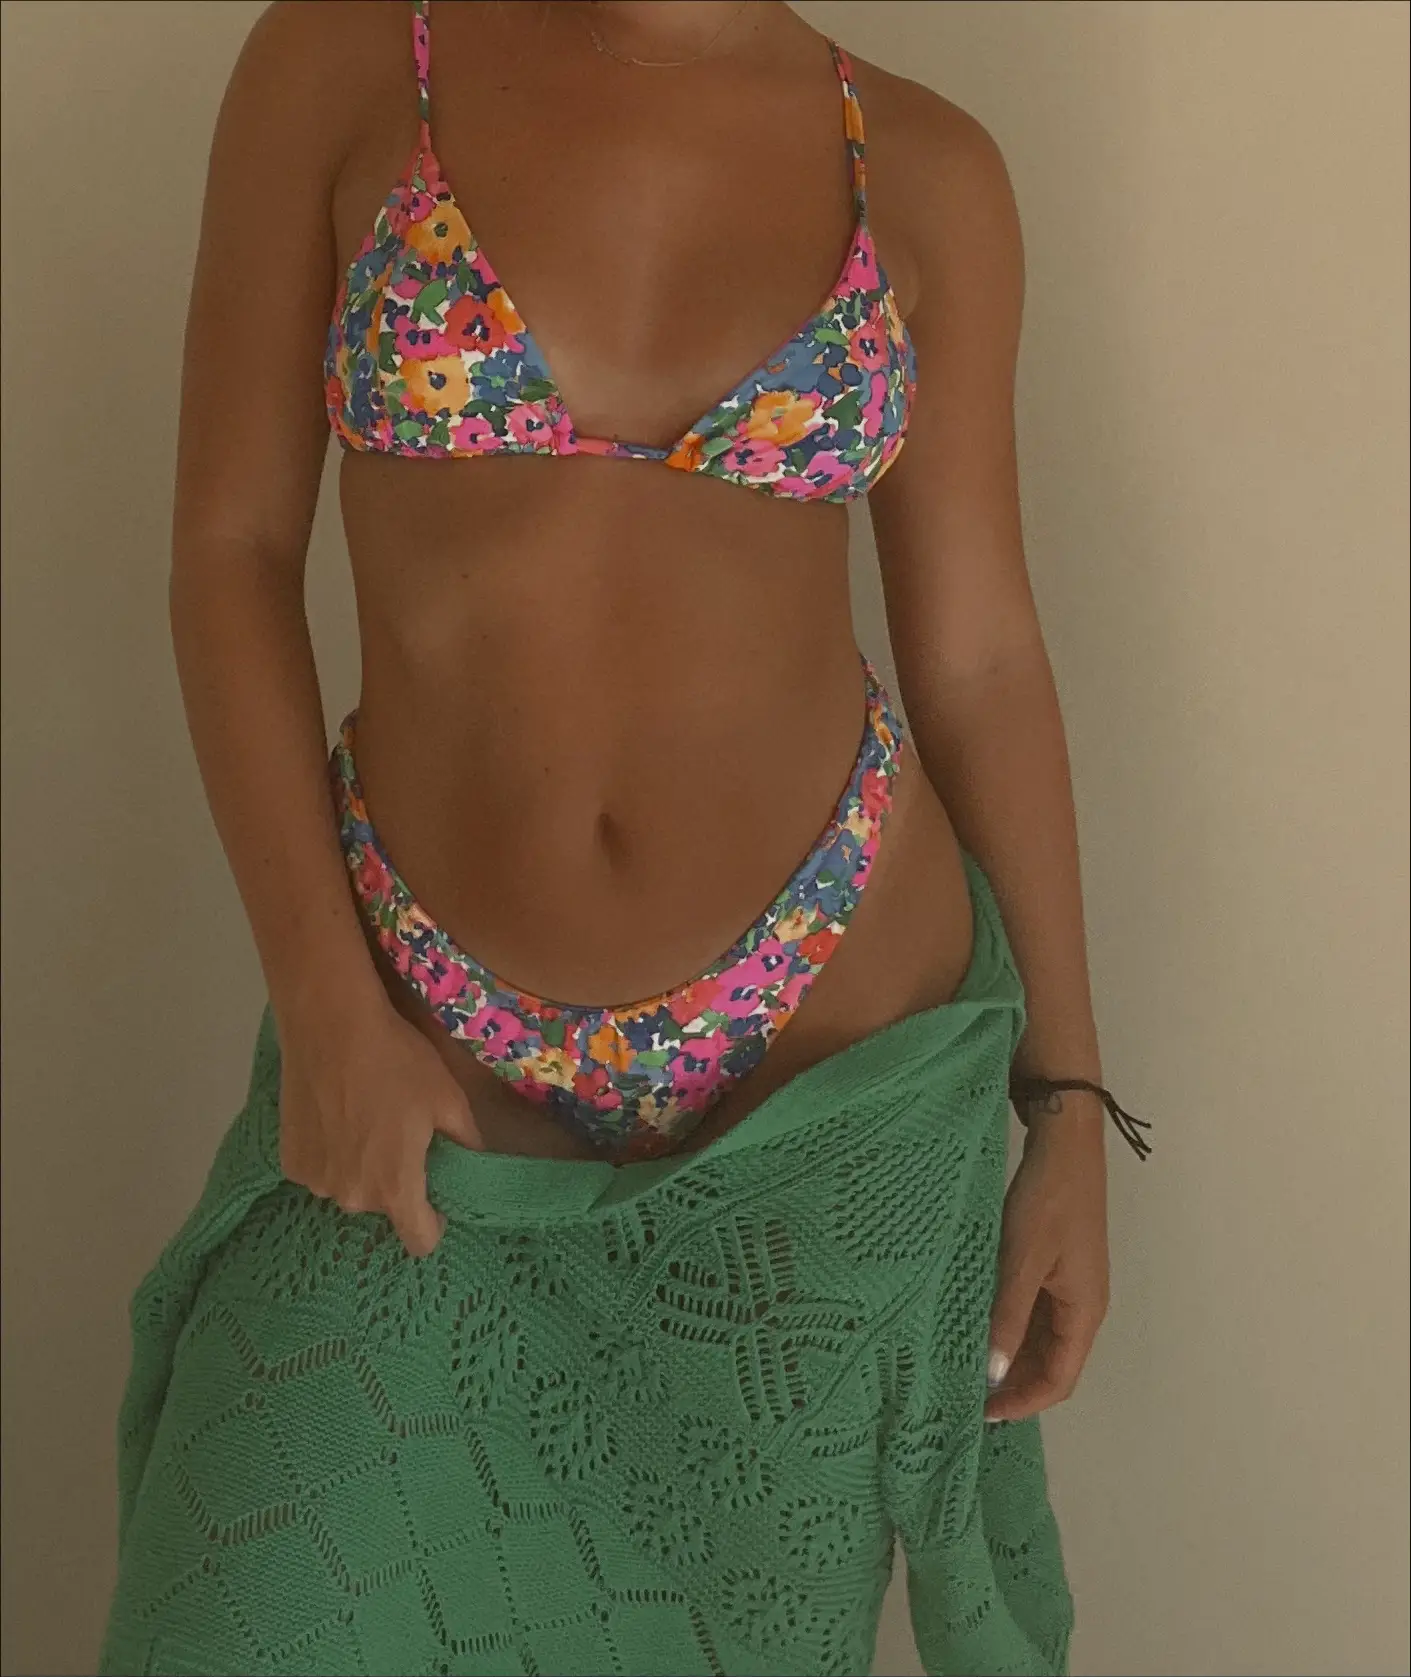 SHEIN MOD Ruffle Trim Bikini … curated on LTK